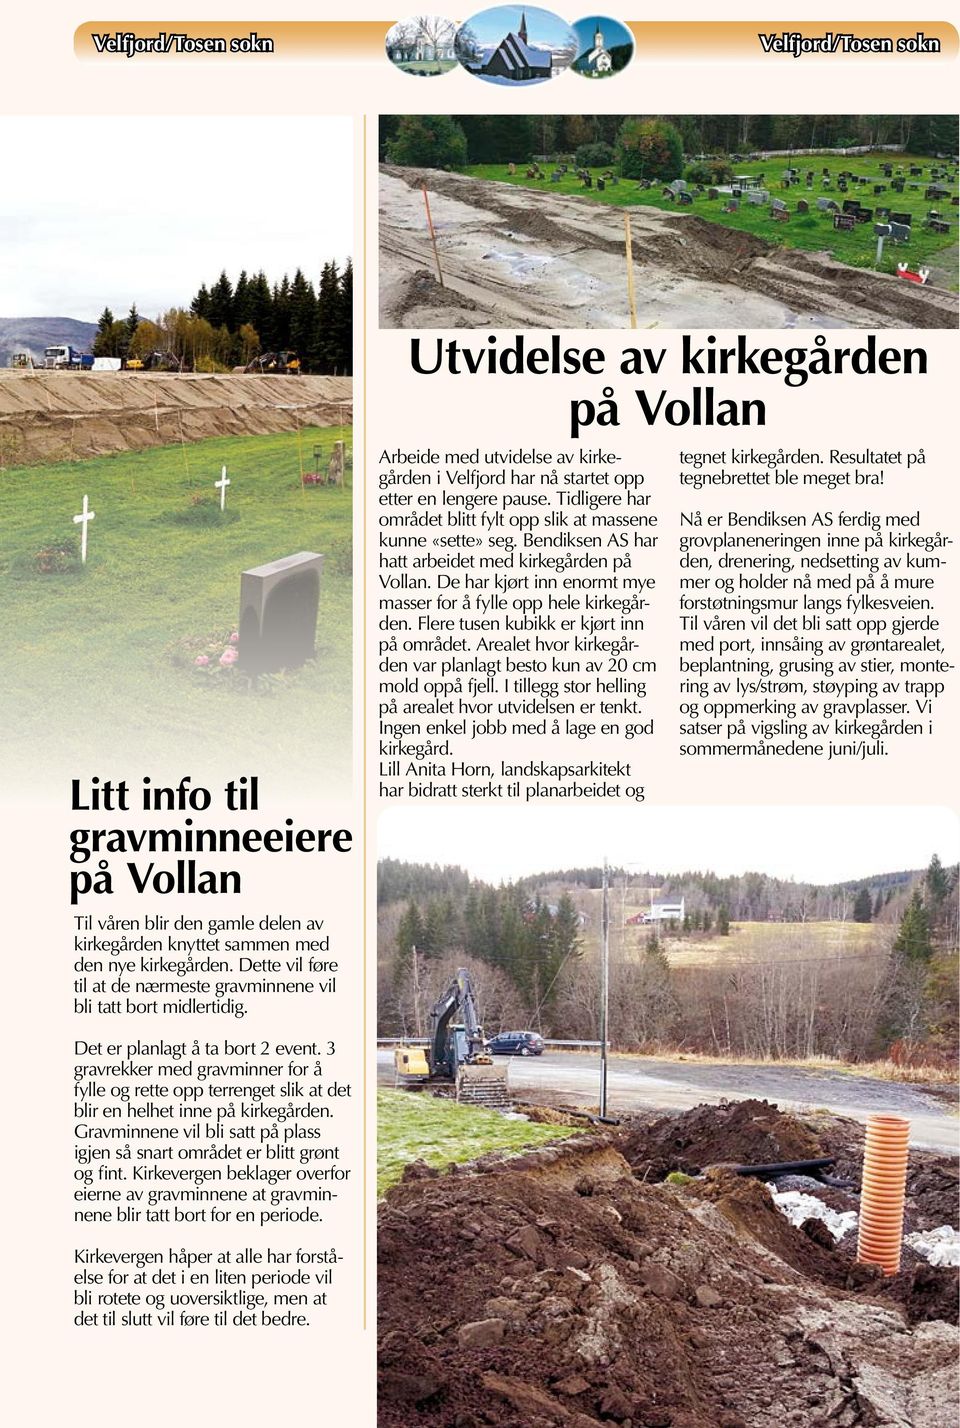 Utvidelse av kirkegården på Vollan Arbeide med utvidelse av kirkegården i Velfjord har nå startet opp etter en lengere pause. Tidligere har området blitt fylt opp slik at massene kunne «sette» seg.